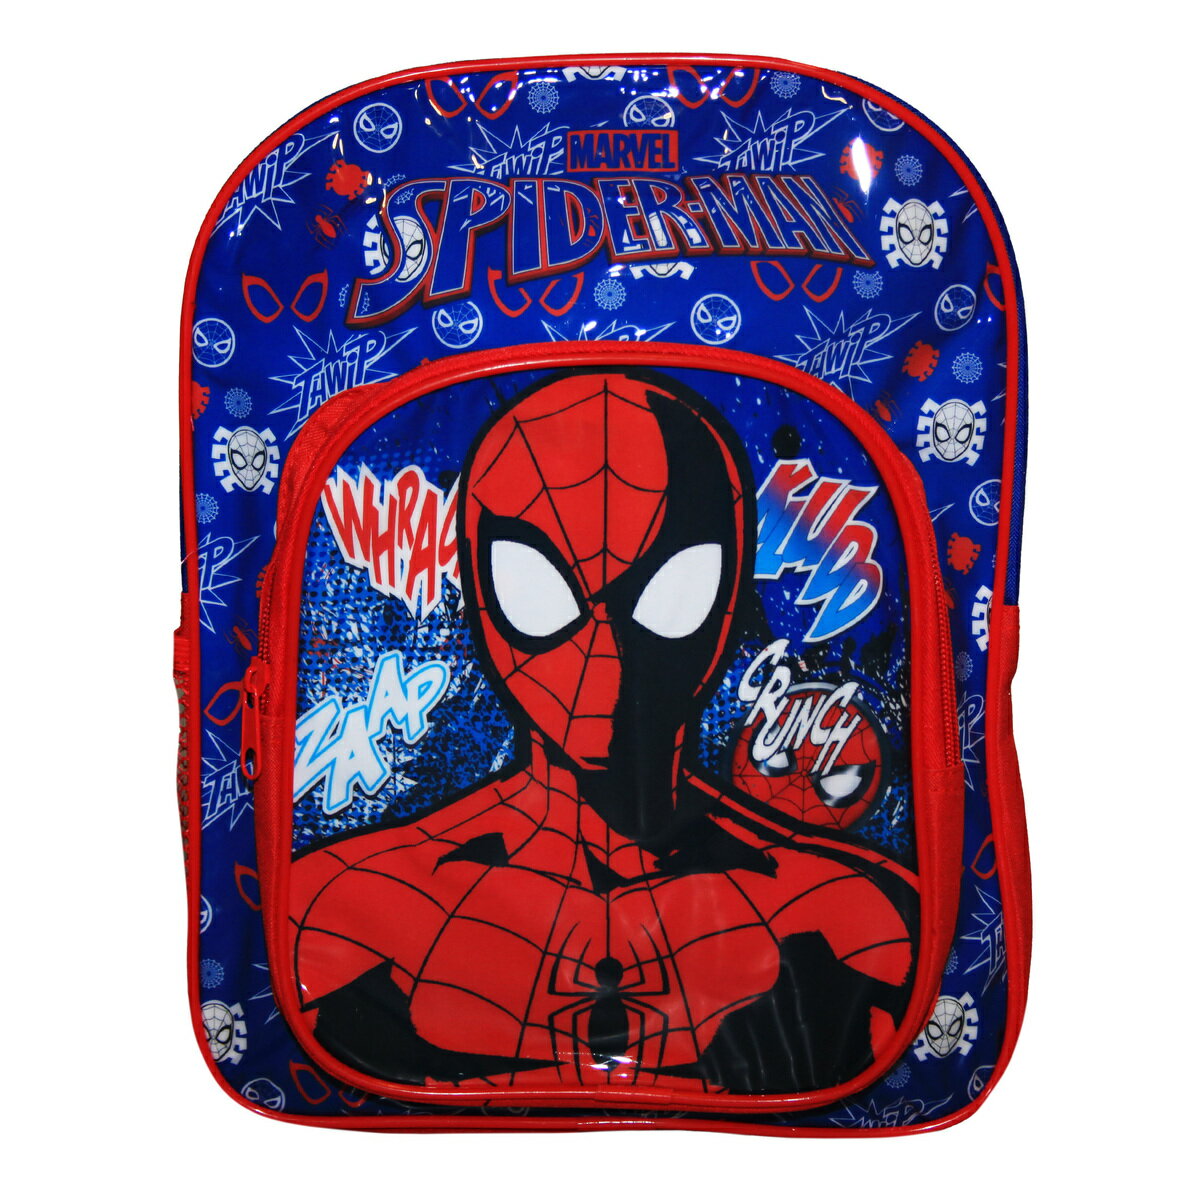 (スパイダーマン) Spider-Man オフィシャル商品 キッズ・子供用 バックパック リュック かばん 【海外通販】